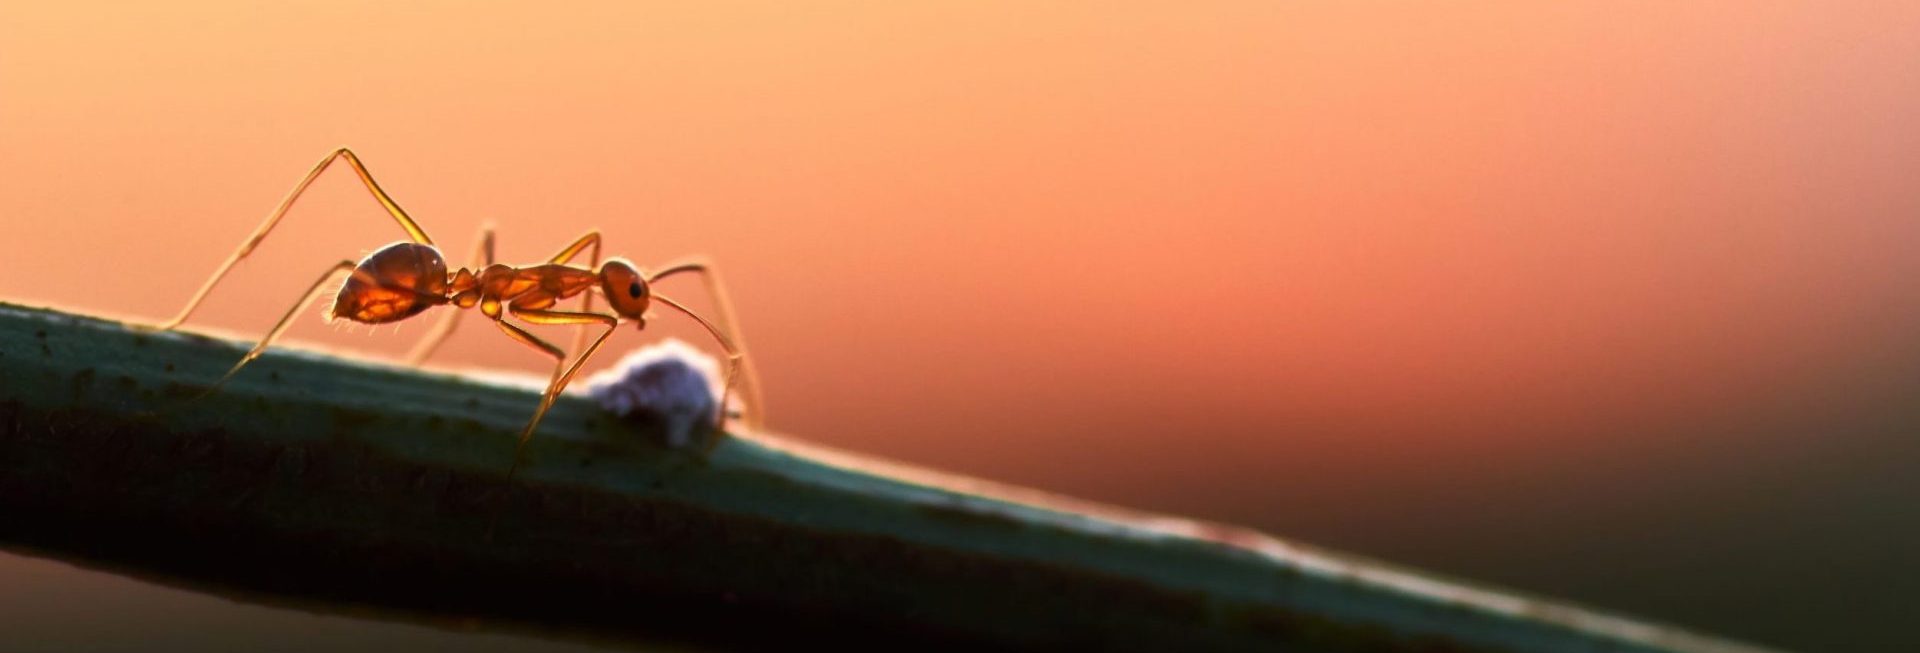 Zdjęcie przedstawia mrówkę idącej po łodydze rośliny. 